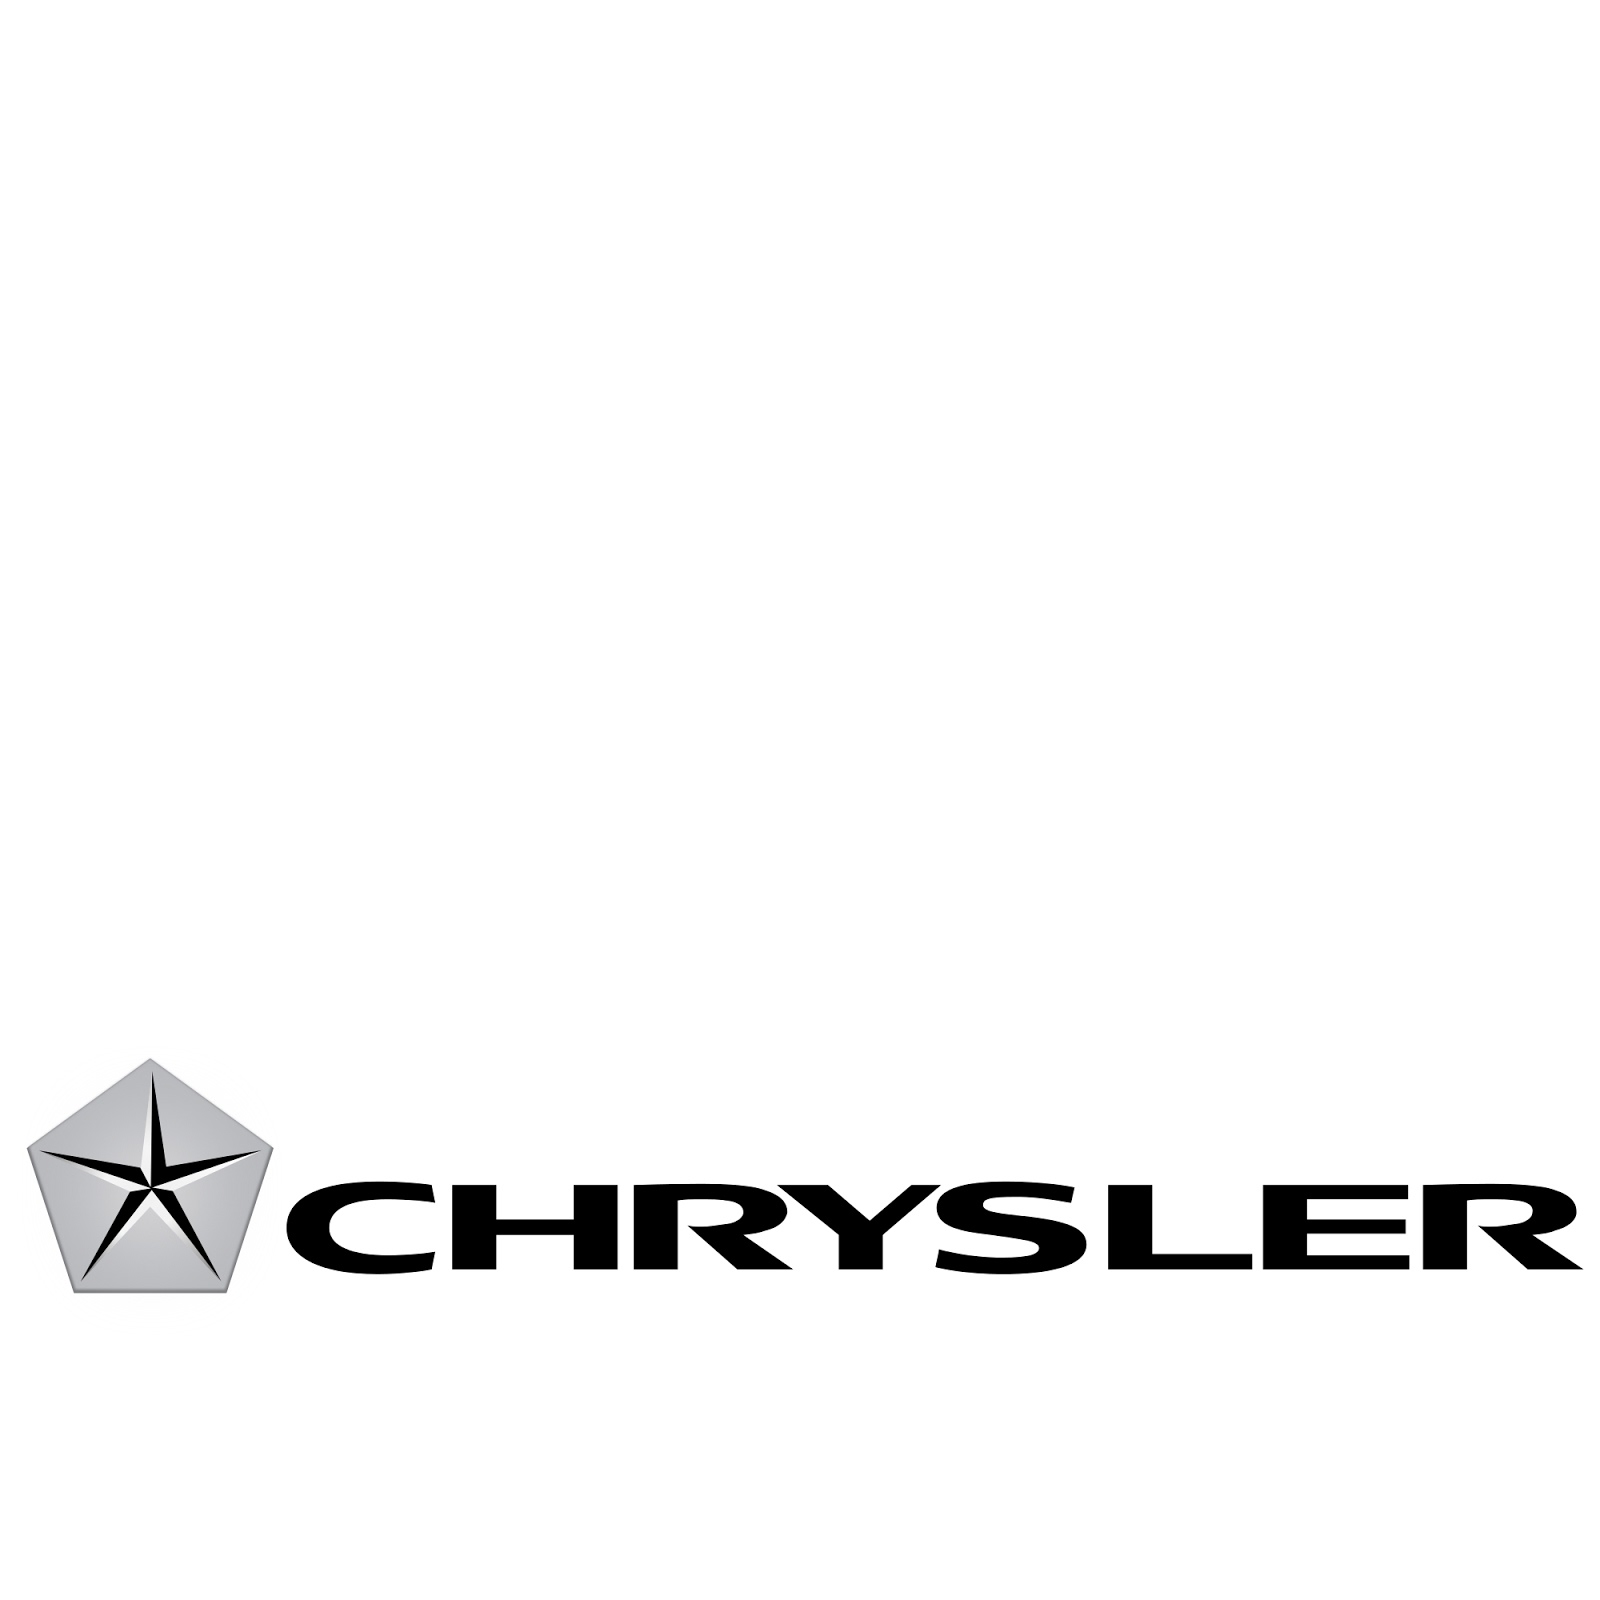 Chrysler division #2